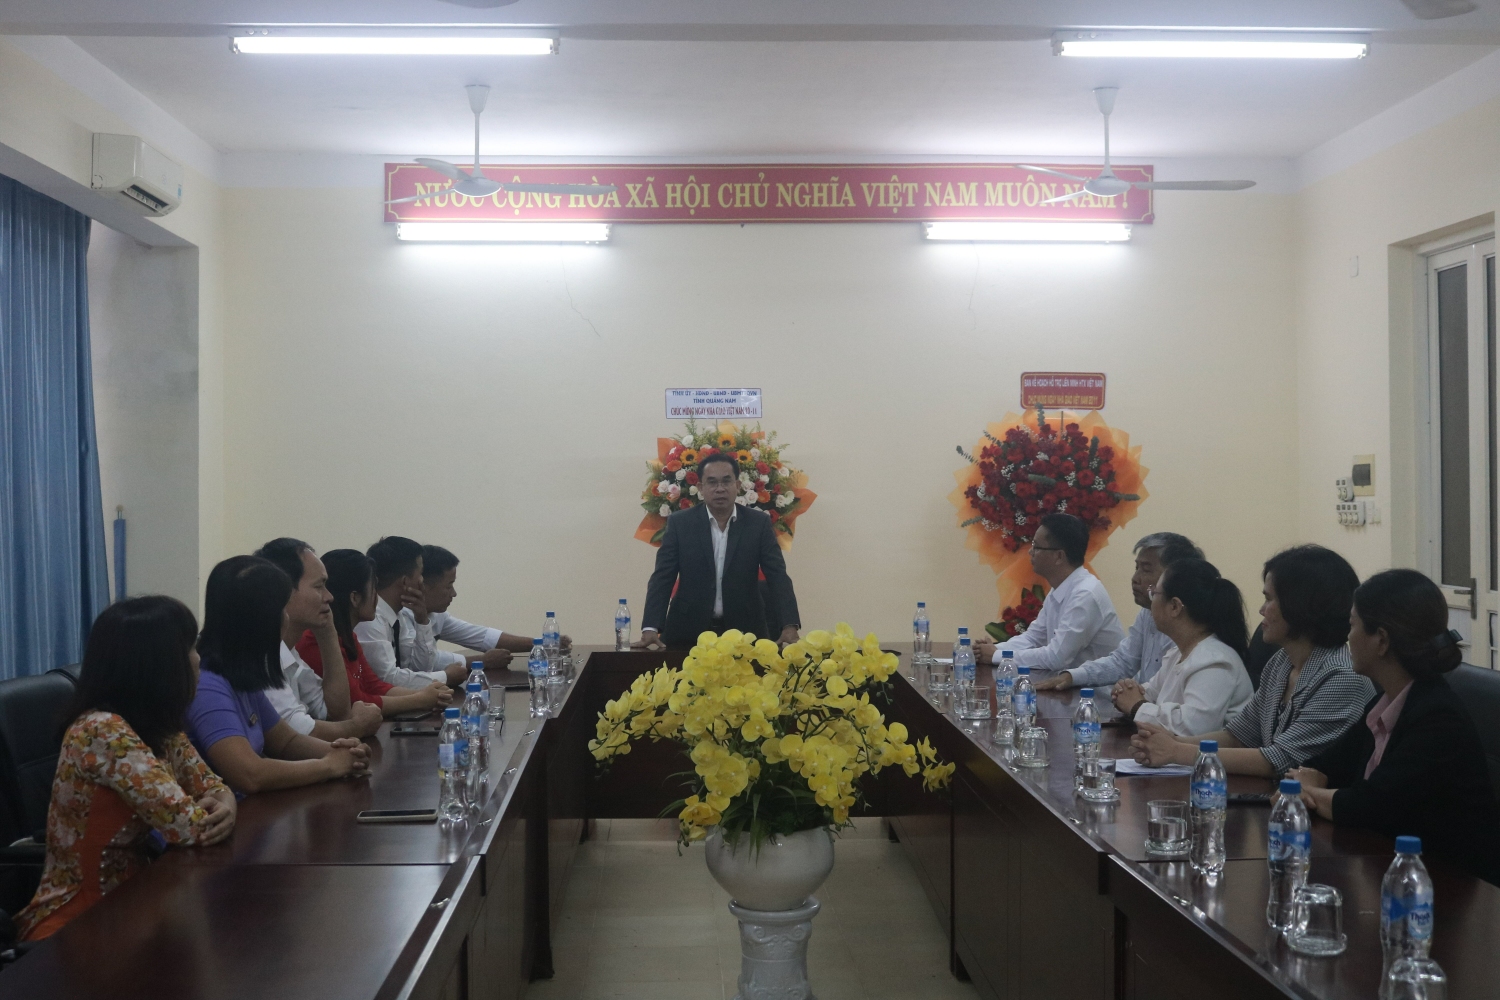 Đồng chí Trần Anh Tuấn – Phó Chủ tịch UBND Tỉnh Quảng Nam, cùng các đơn vị trên địa bàn thành phố Tam Kỳ đã đi thăm, tặng quà, chúc mừng các thầy, cô giáo tại Trường Trung cấp Kinh tế - Kỹ thuật và Đào tạo Cán bộ HTX miền Trung – Tây Nguyên